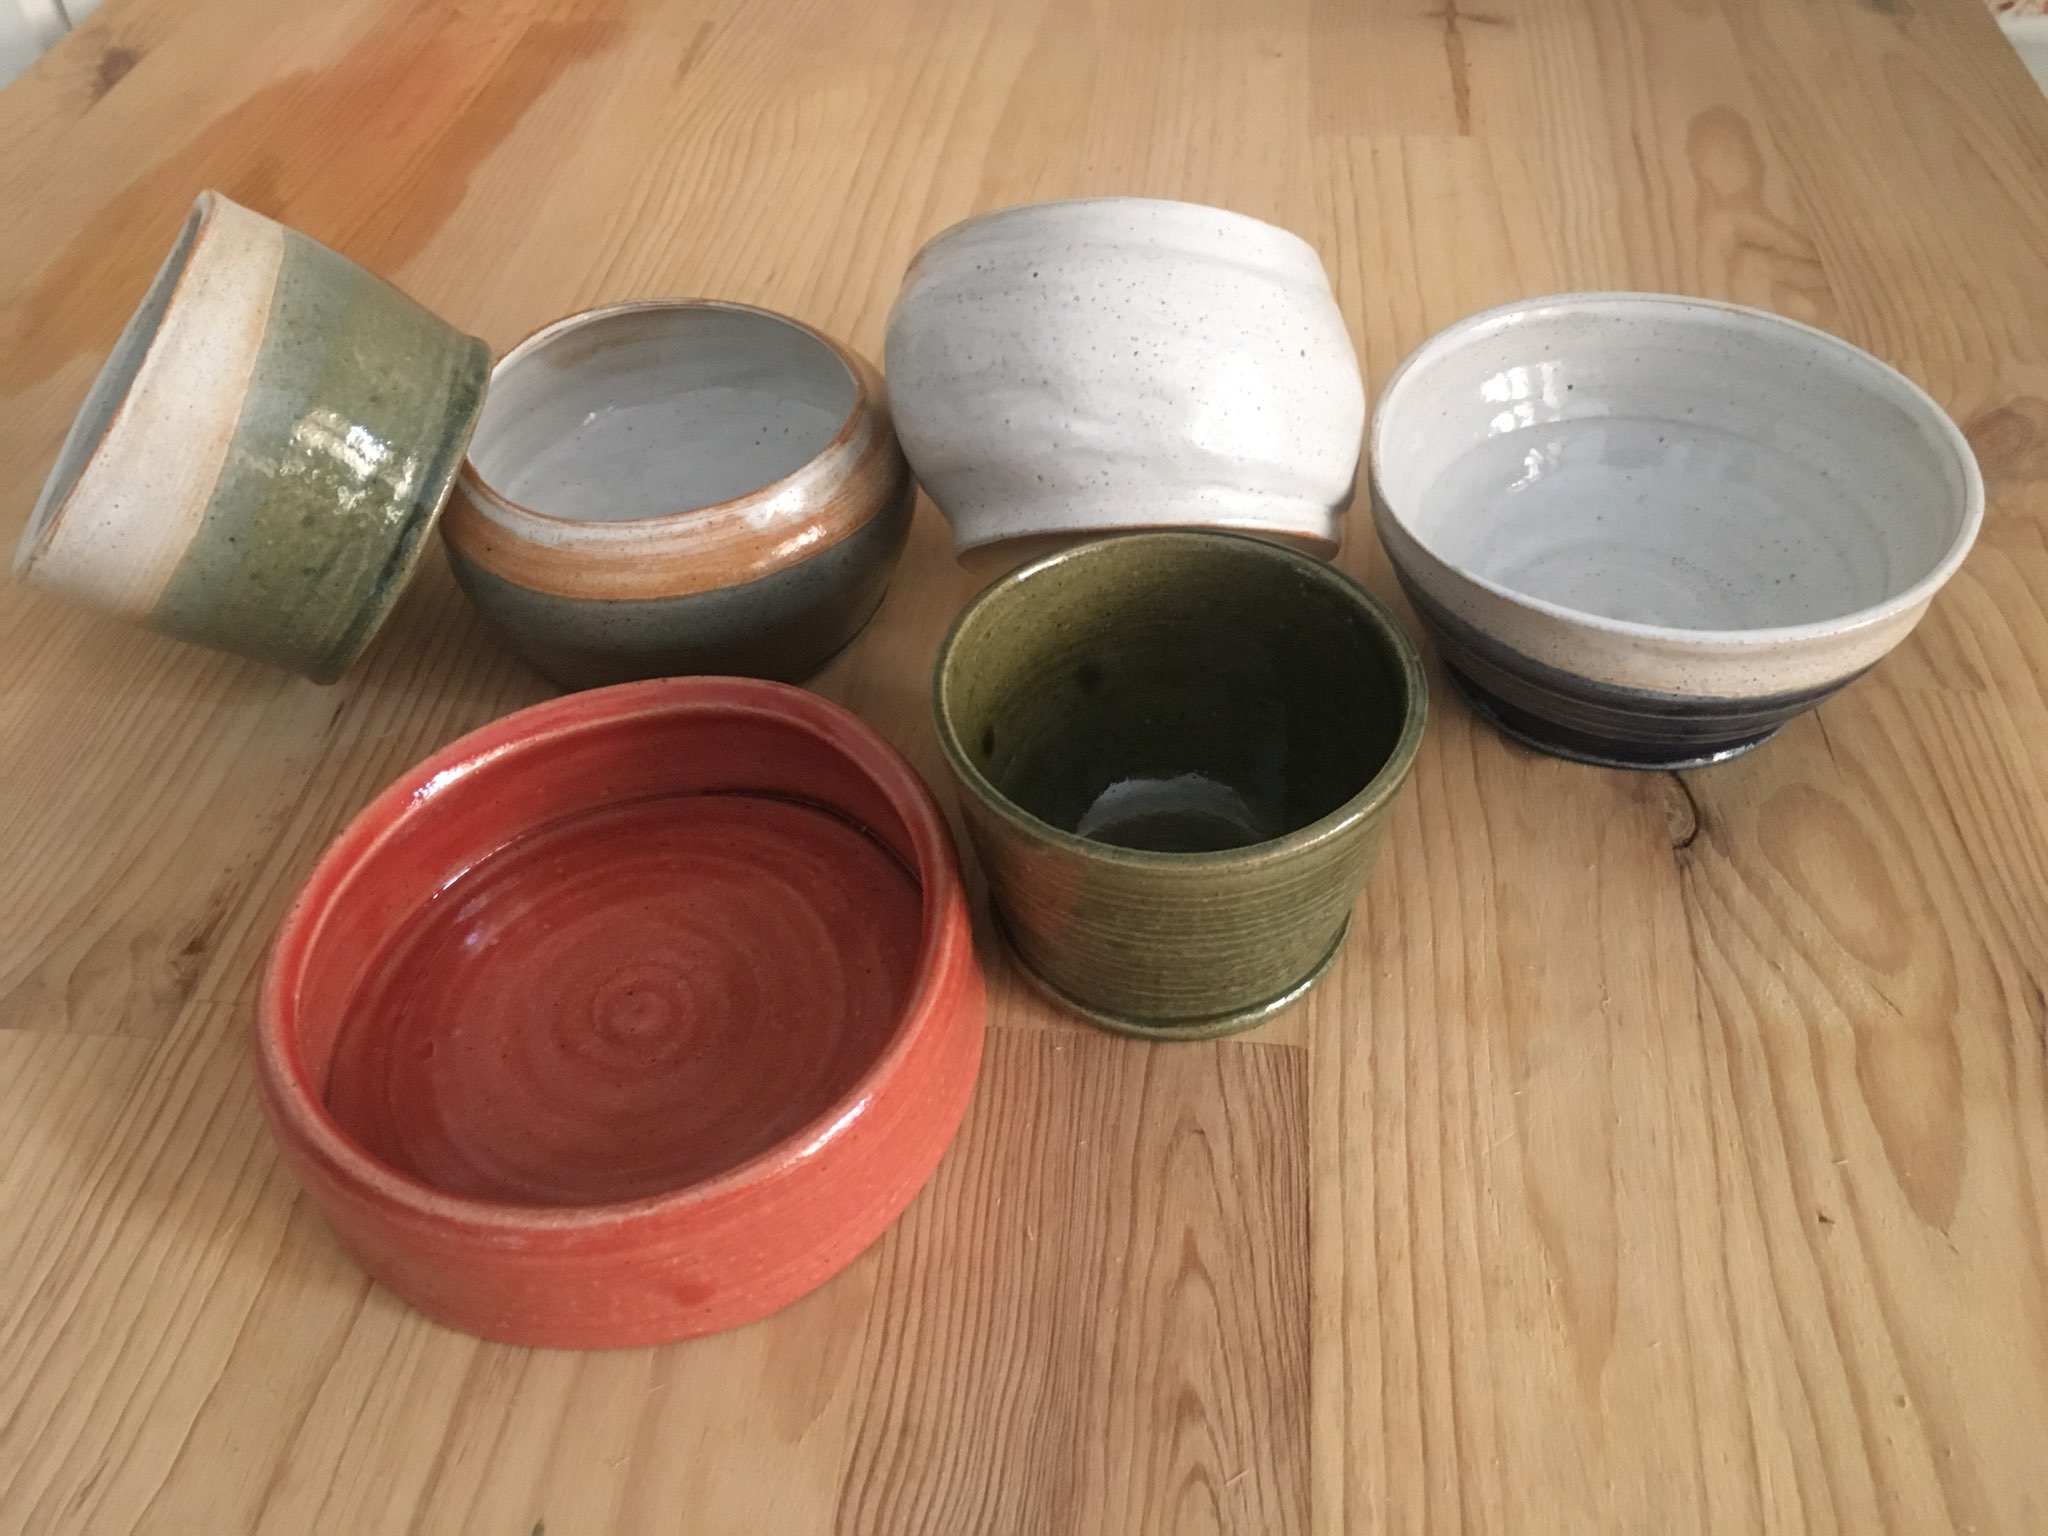 Atelier de poterie et céramique à Marlenheim - Martine DELHAYE